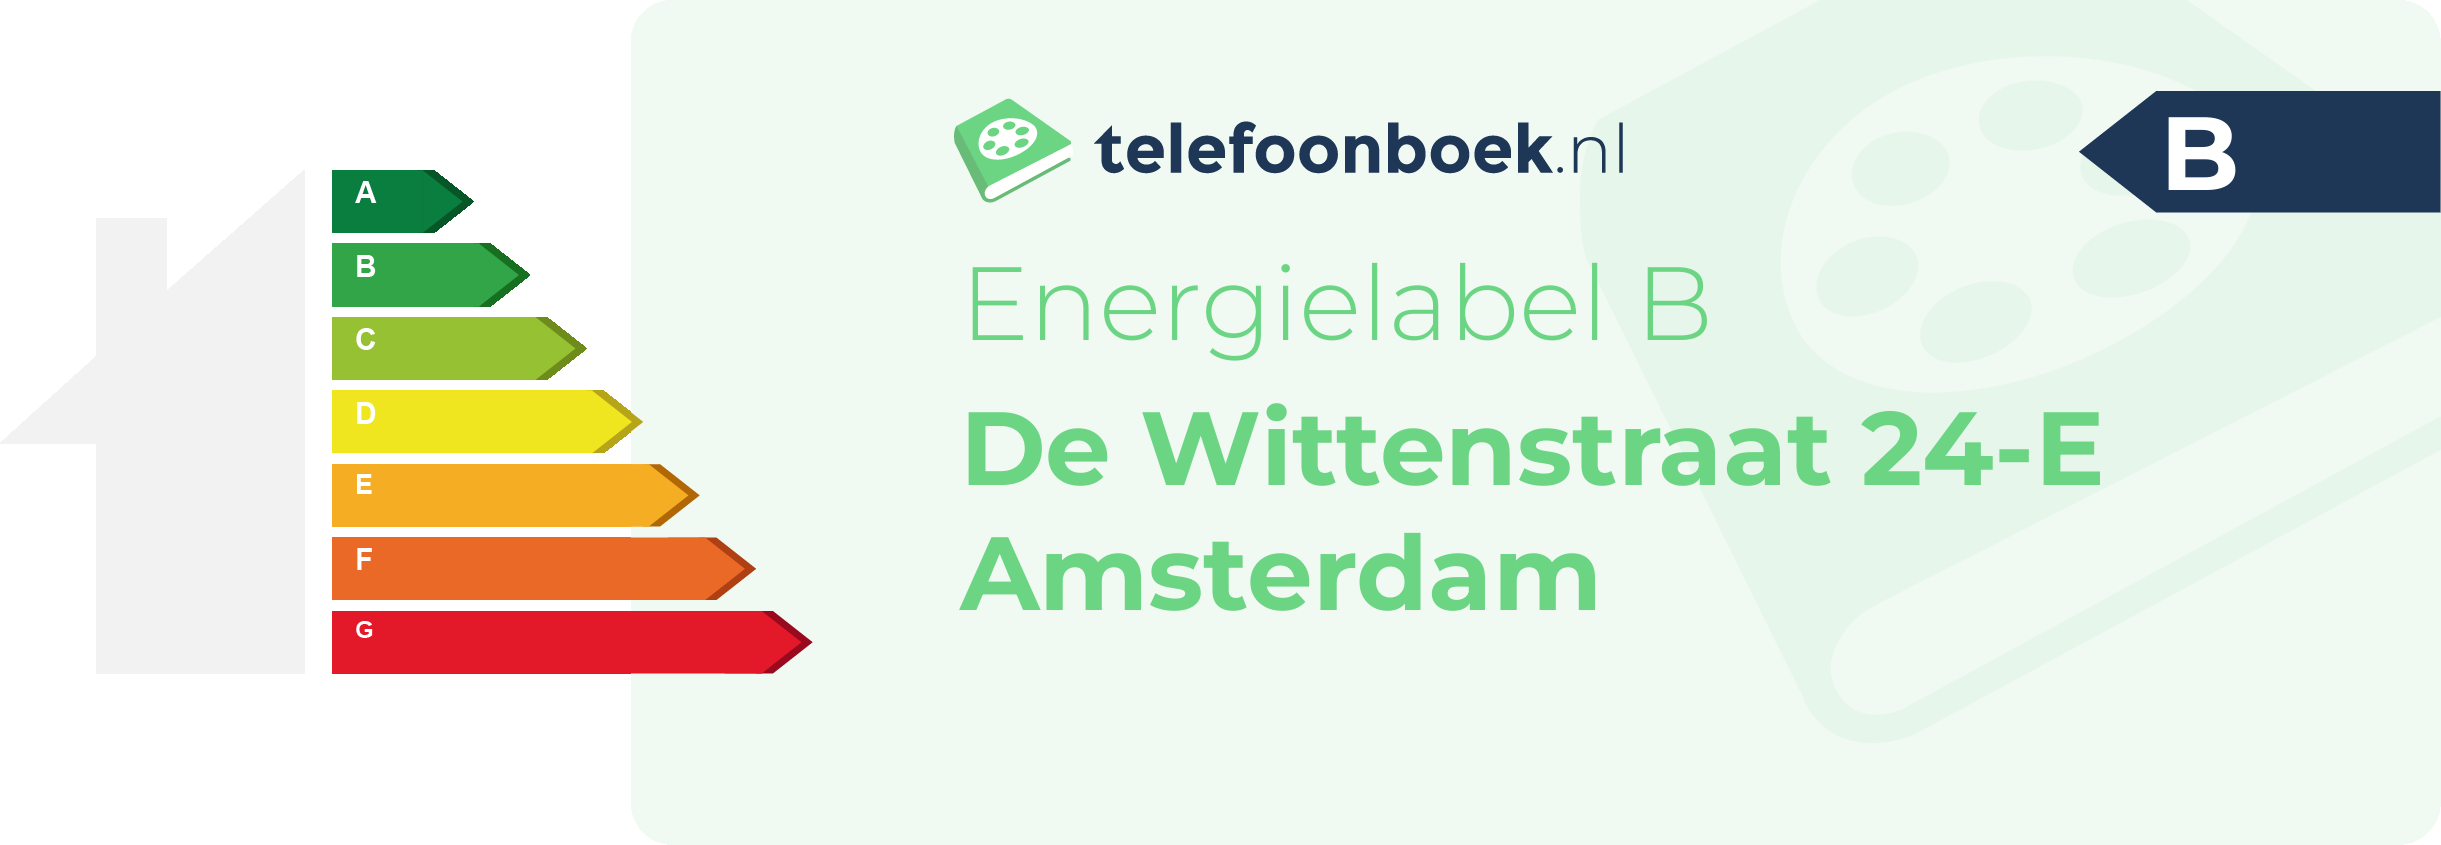 Energielabel De Wittenstraat 24-E Amsterdam